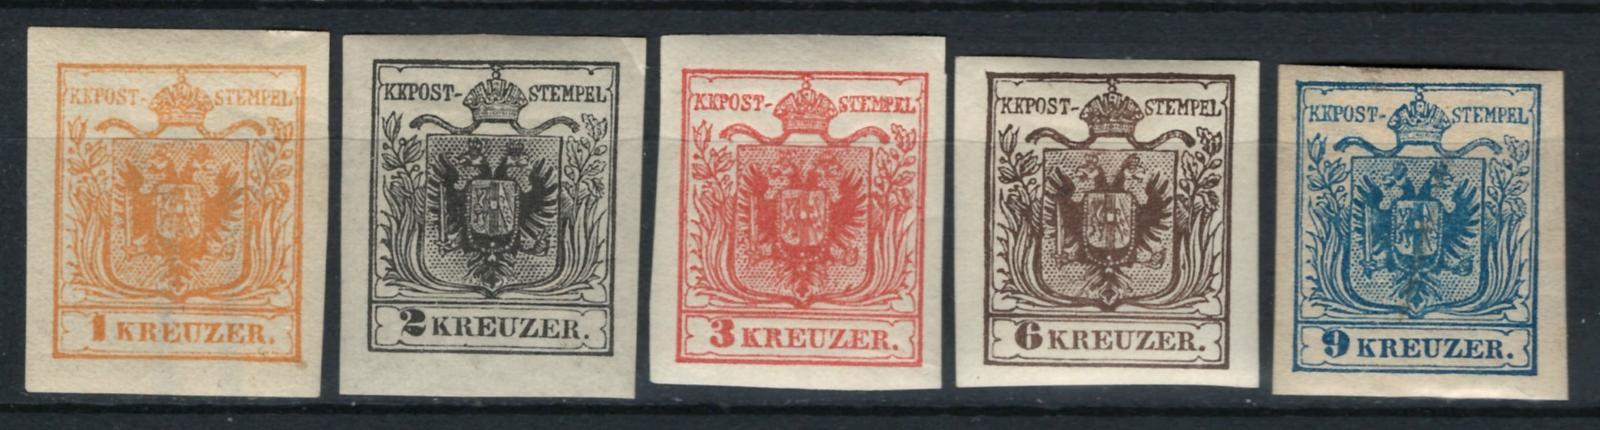 Rakousko / ÖSTERREICH - 1. emise - Mi. 1 - 5 **/* - ND 1887 - Známky